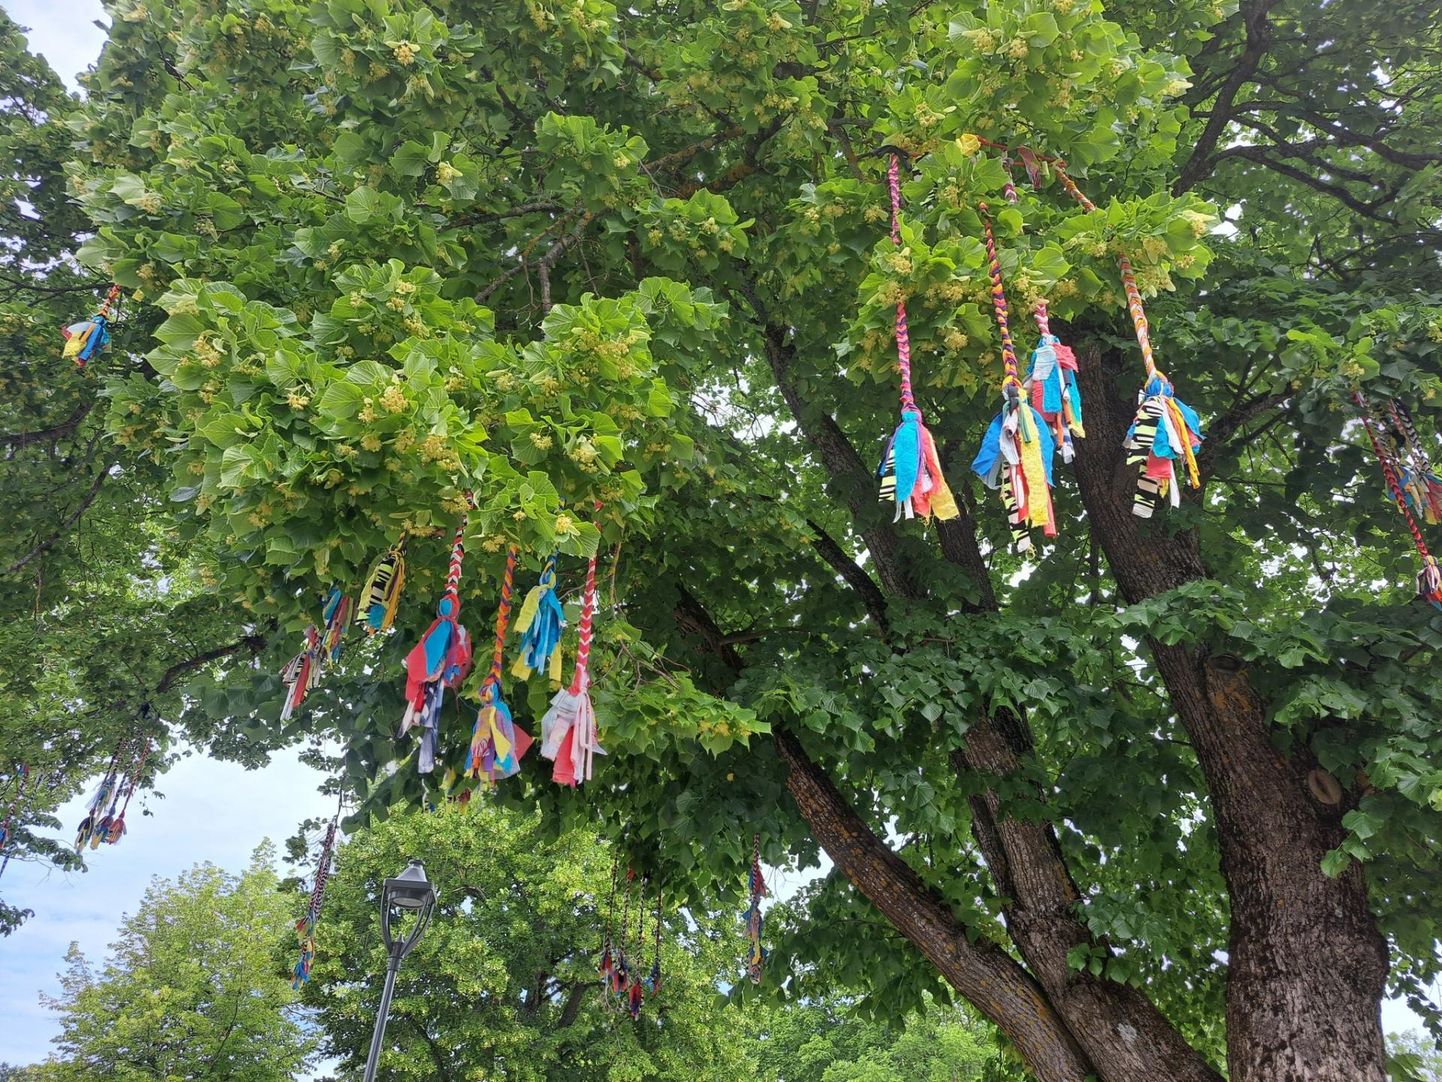 Värvikirevad paelad kultuurikoja ümbruse puudel tähistavad peagi algavat koolinoorte laulu- ja tantsupidu.